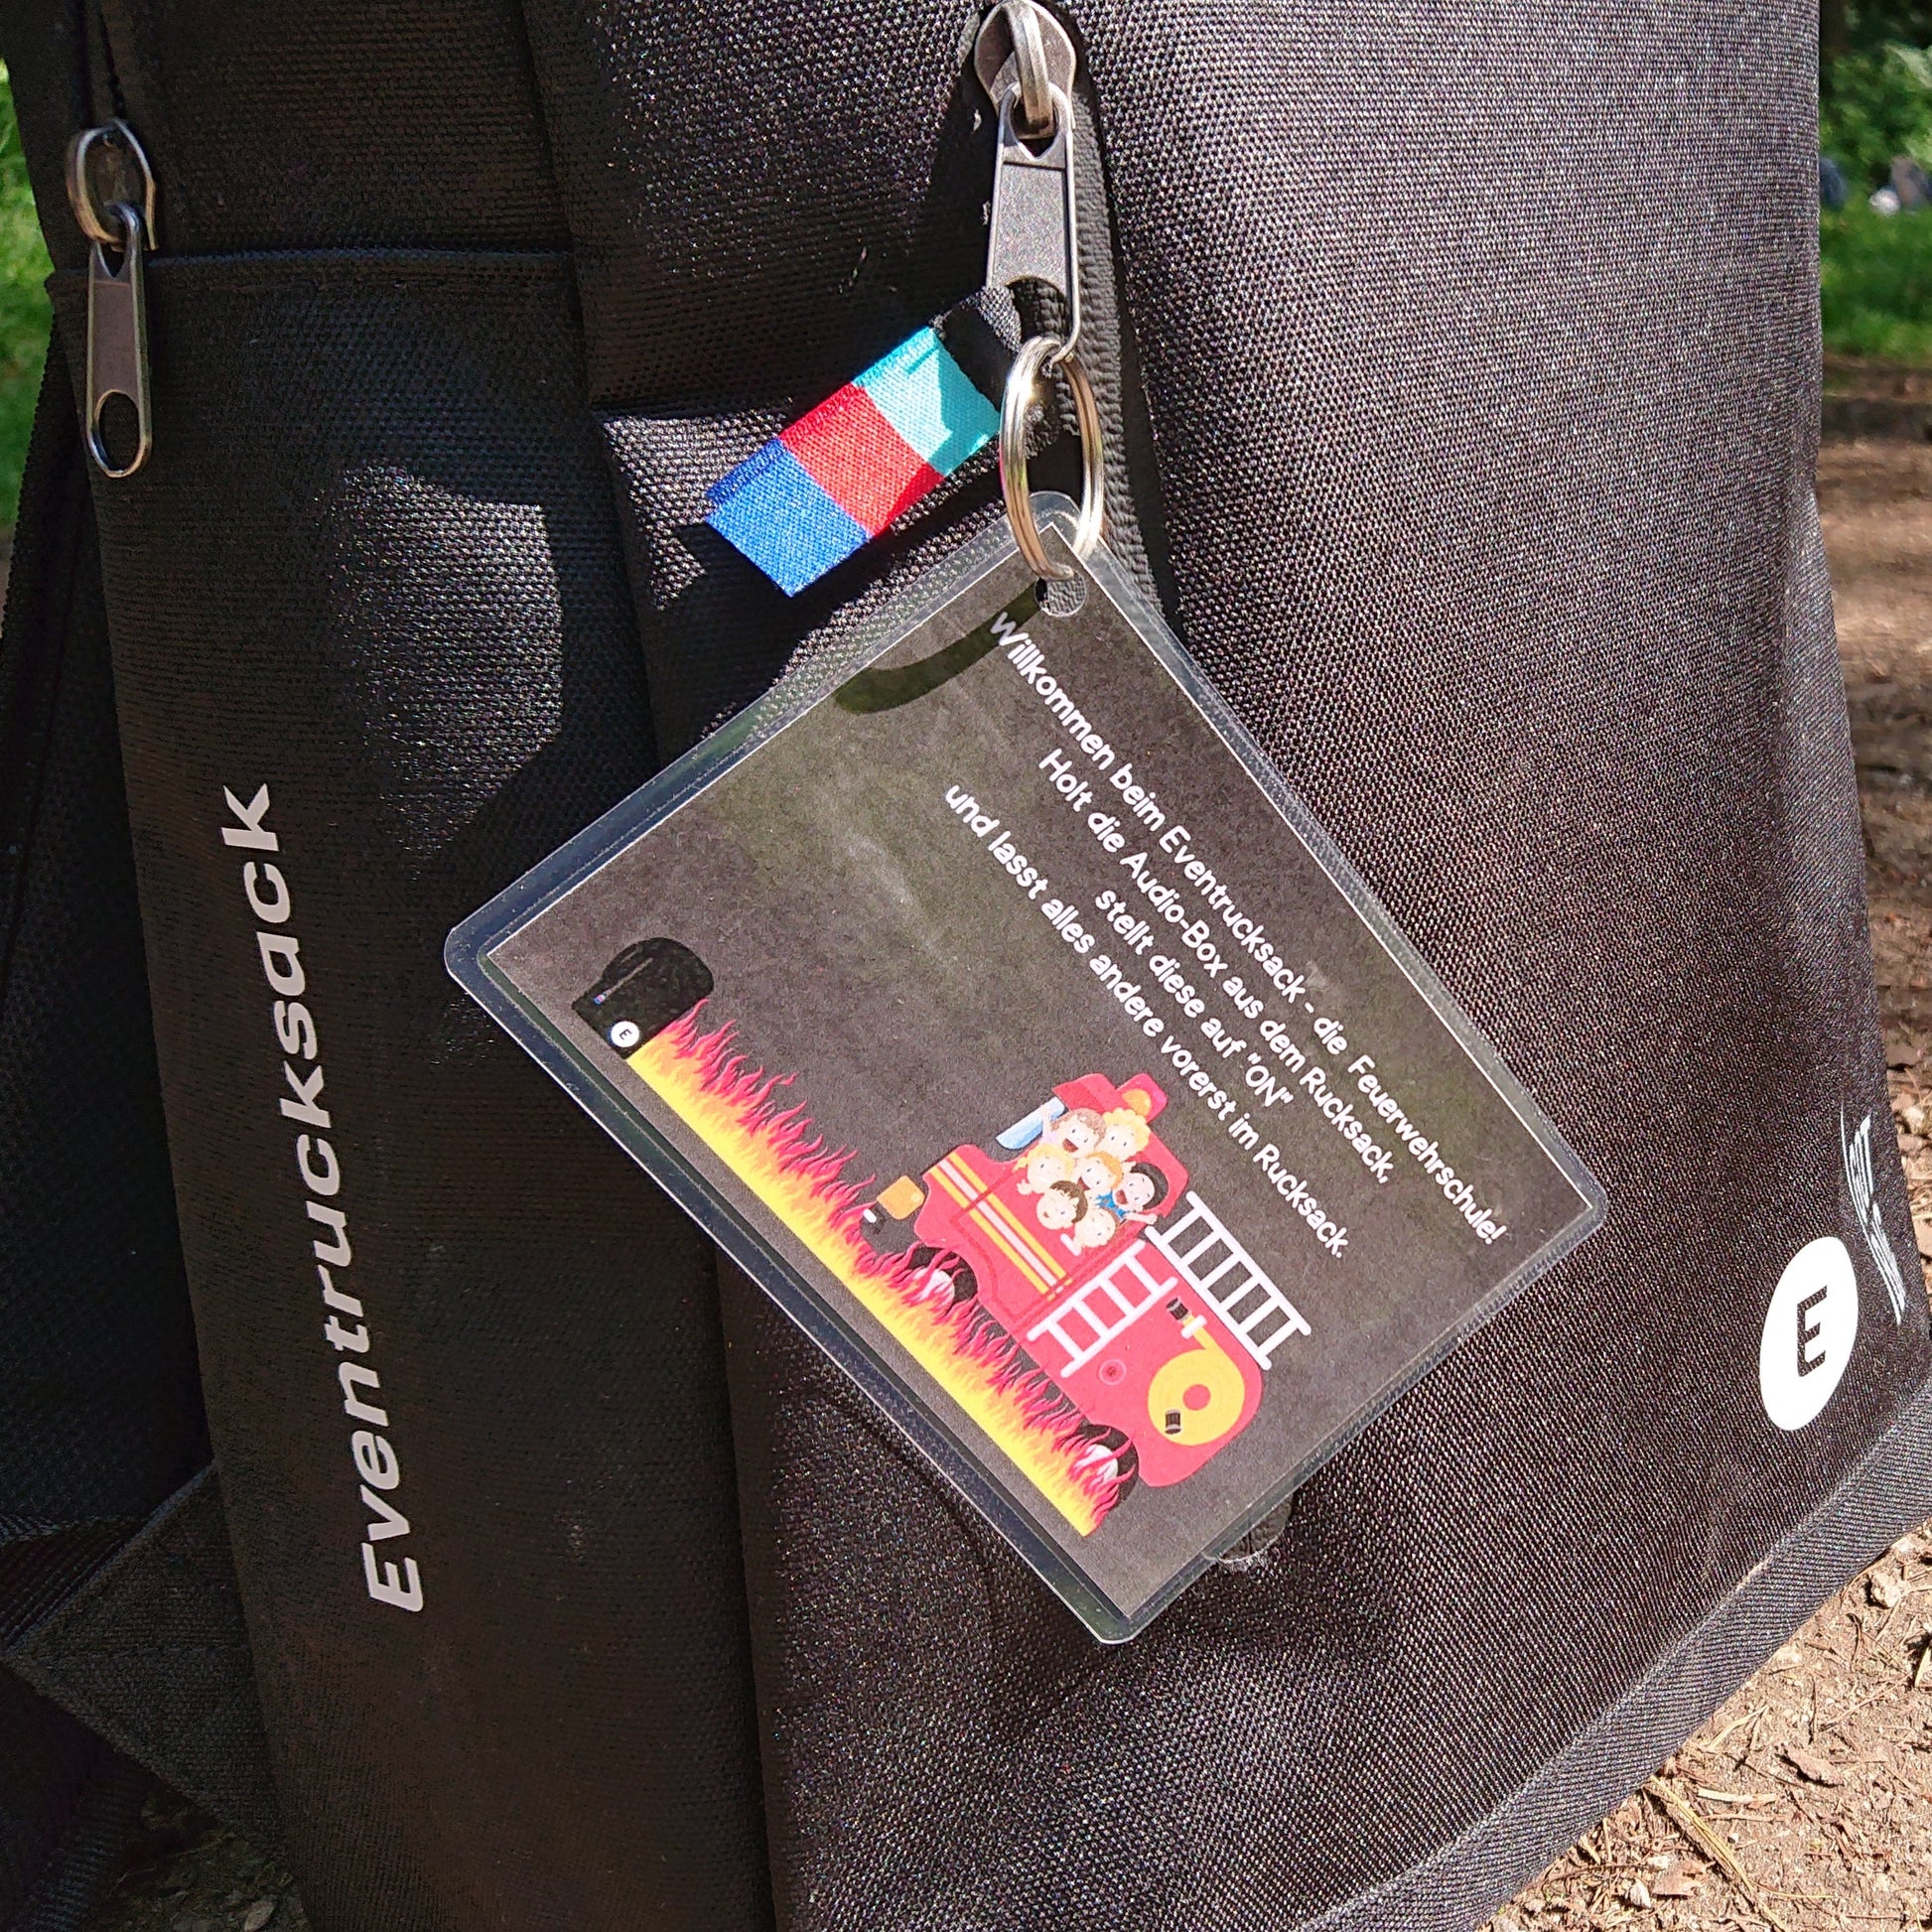 Mit einer kleinen Anweisung, die am Rucksack hängt, erhält man die Info, vorerst nur die Audiobox aus dem Rucksack zu ziehen